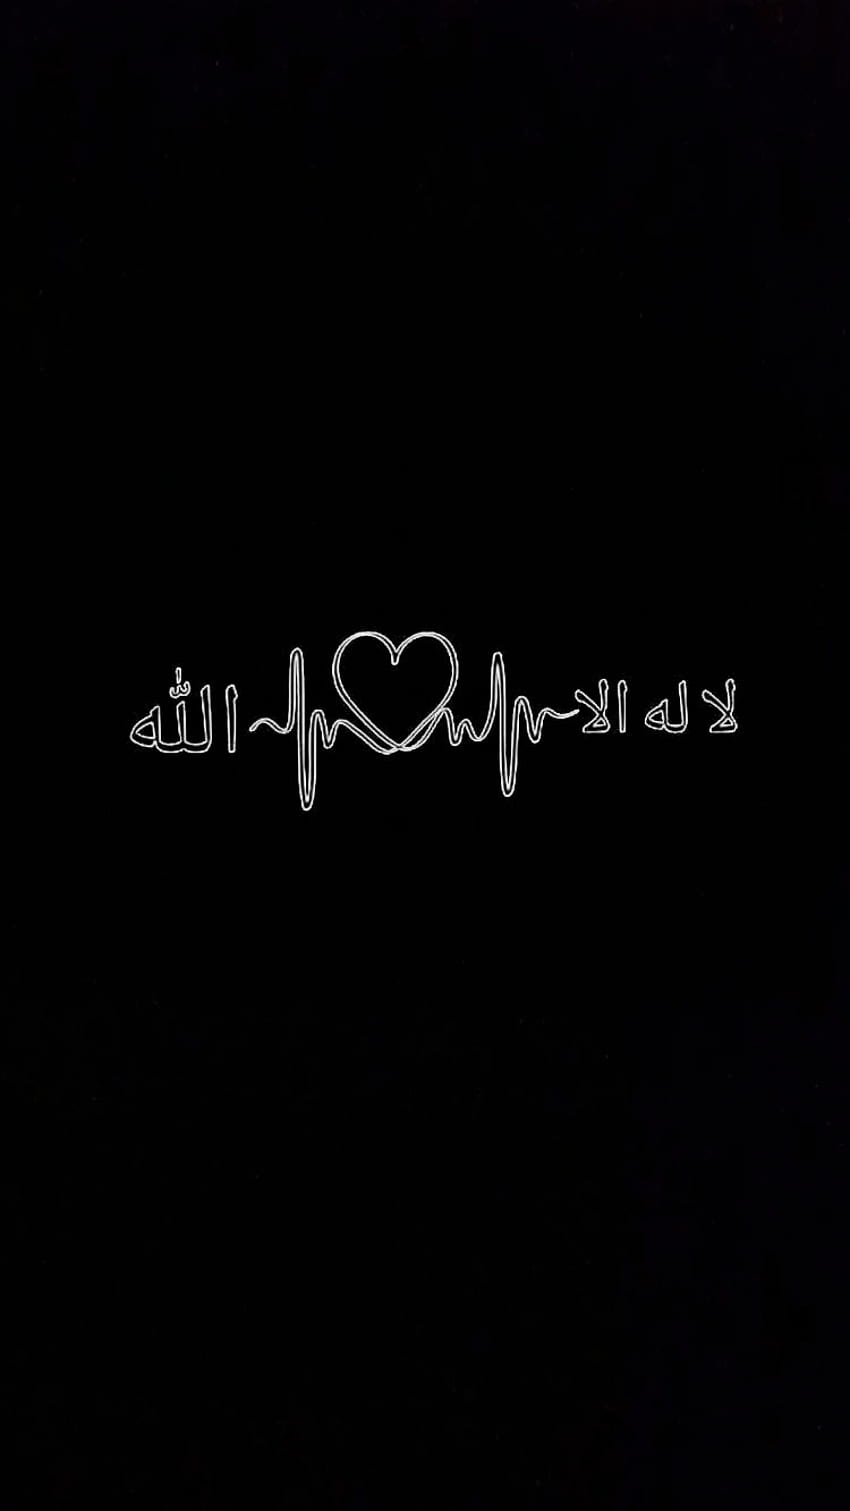 Islam, kalma sharif HD phone wallpaper